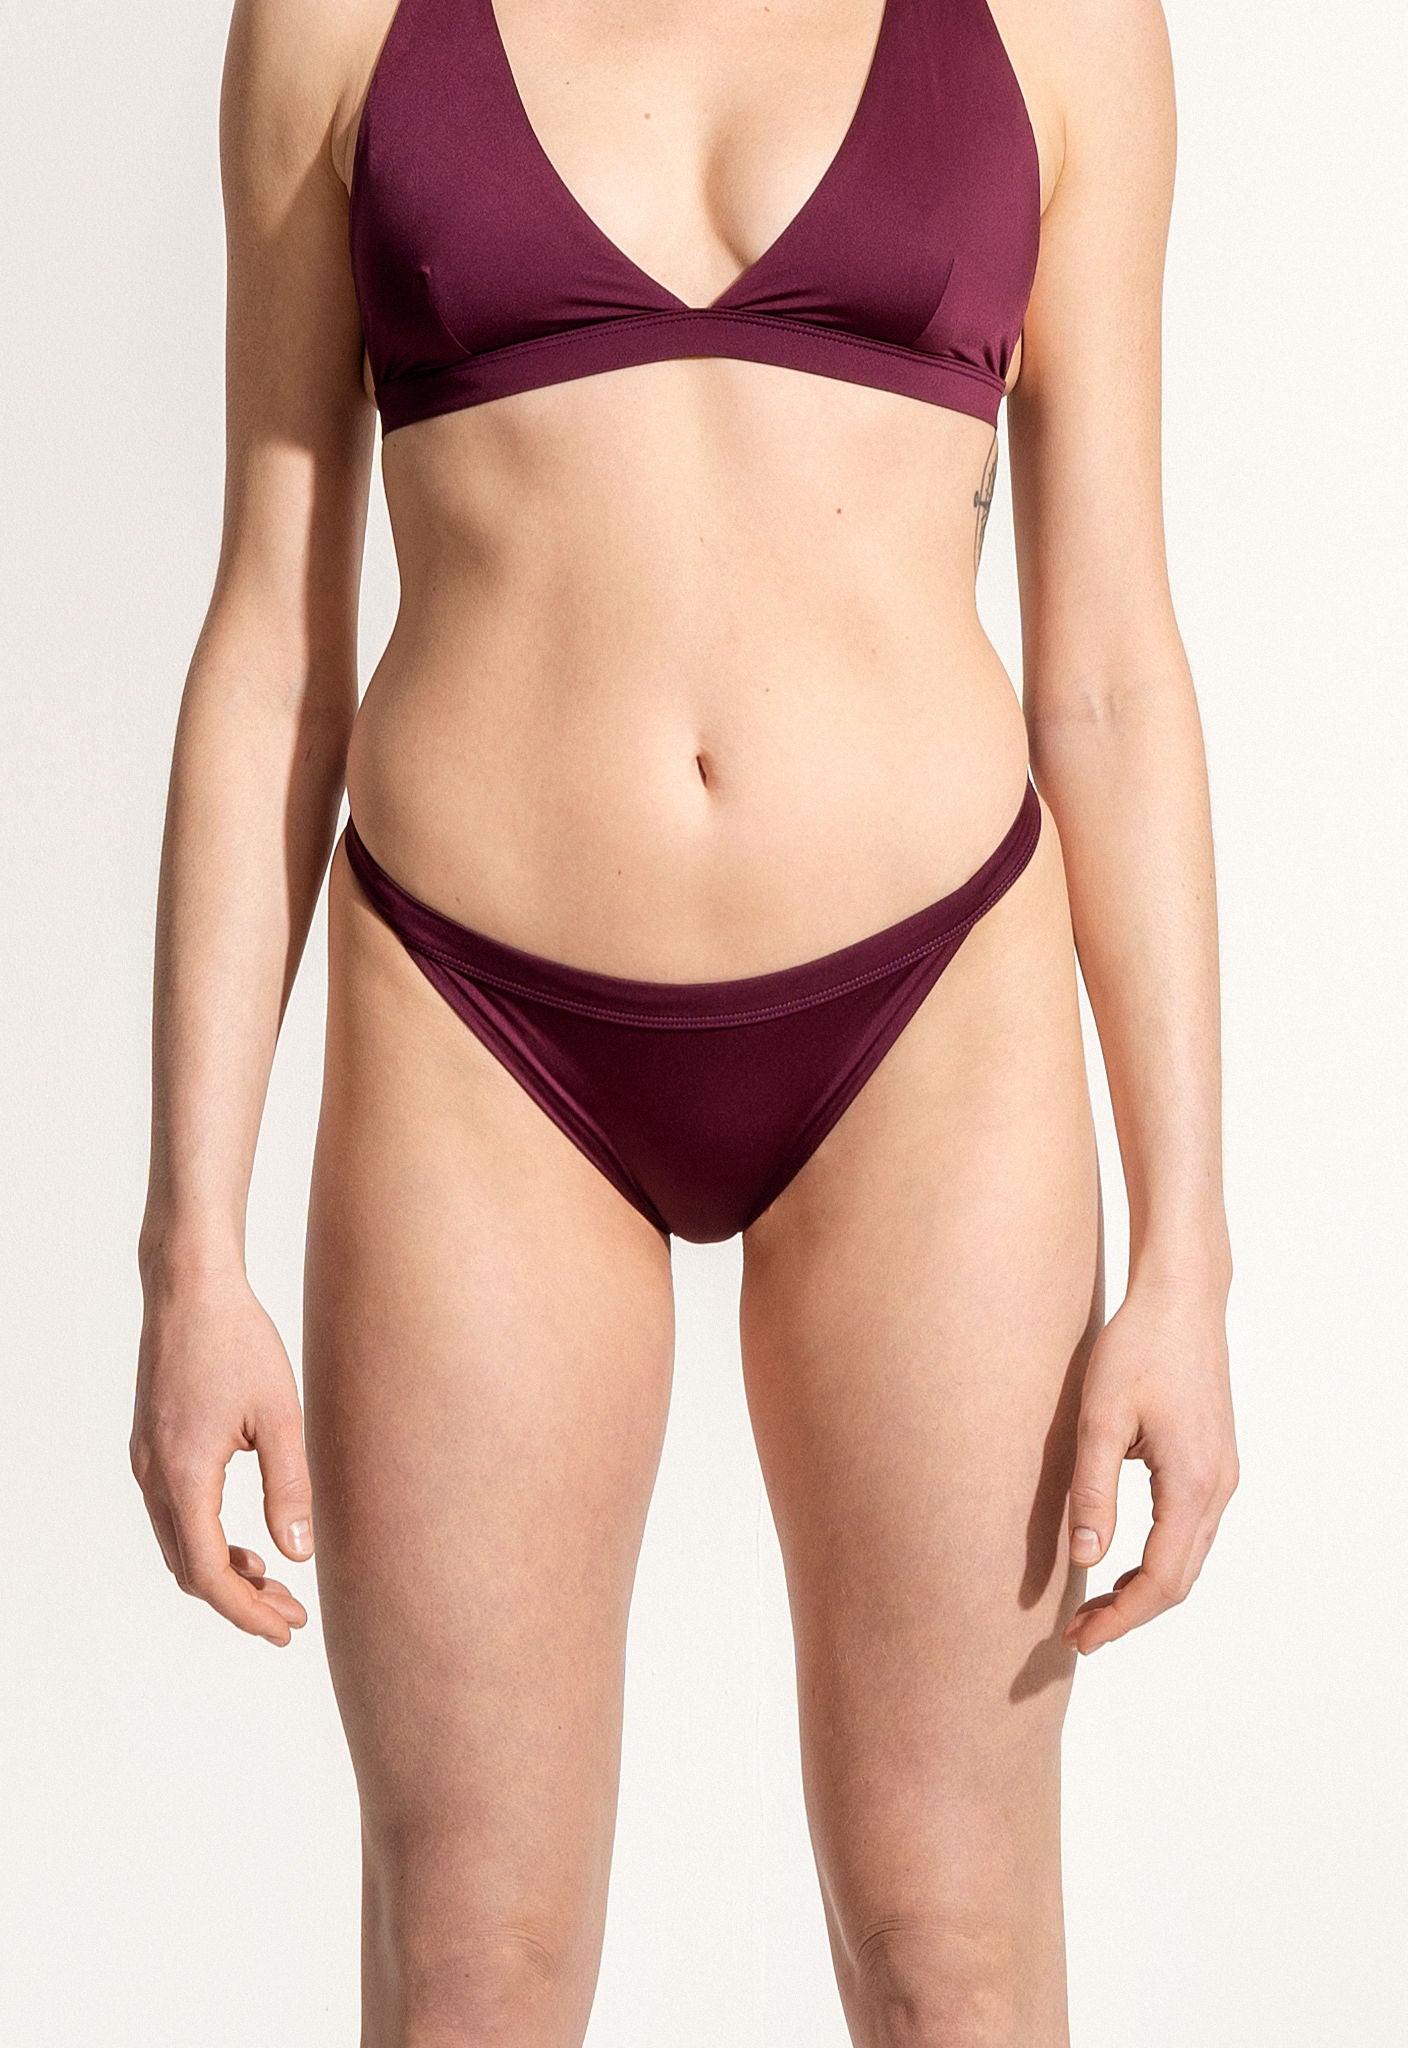 Bikini Bottom "Rio" in sultana violet